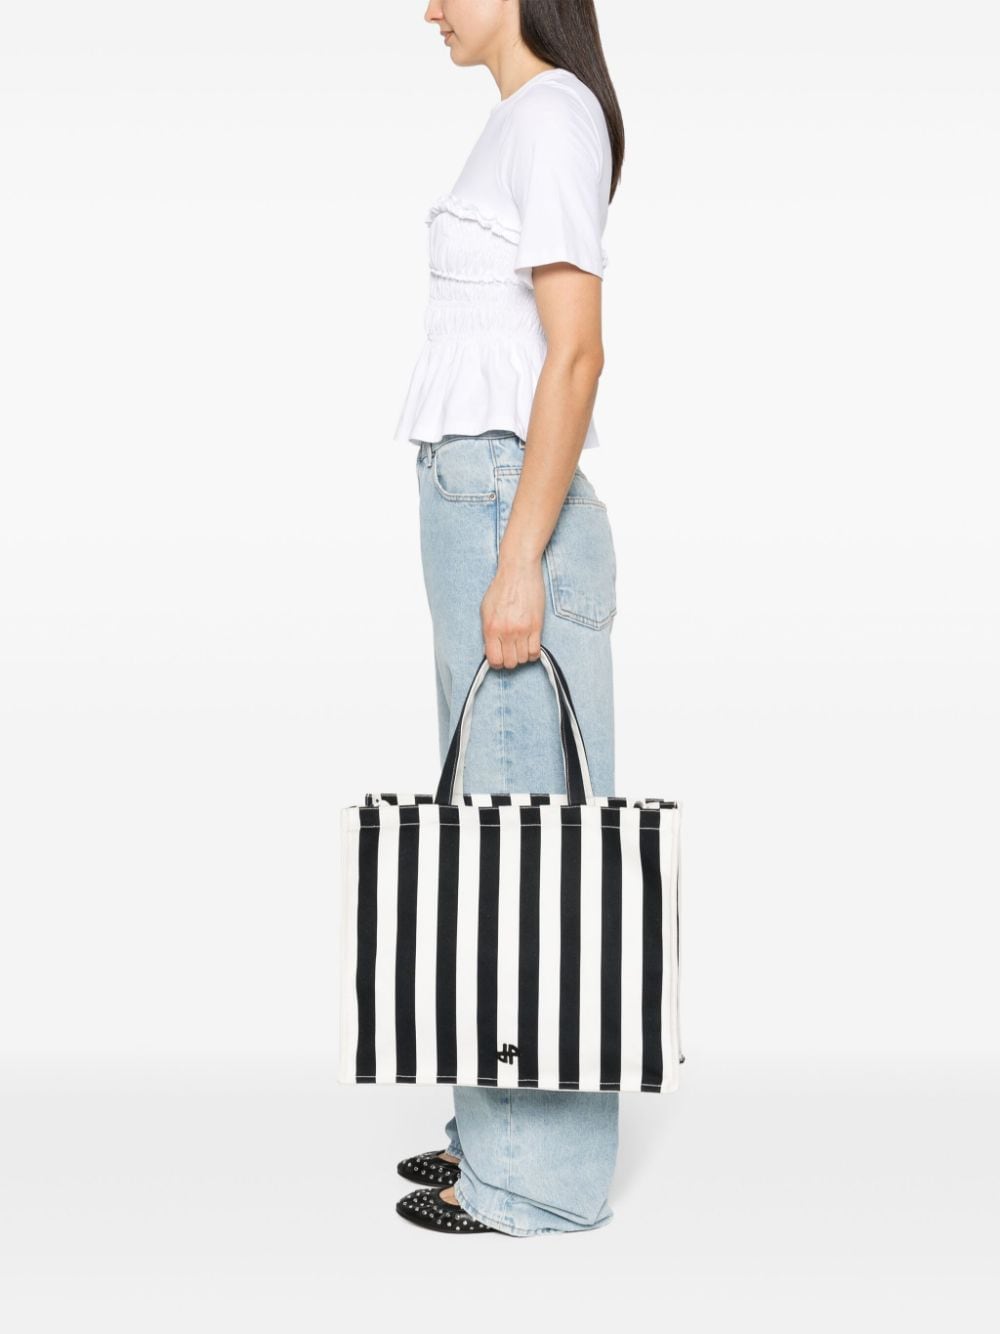 Patou PATOU- Bag With Striped Print